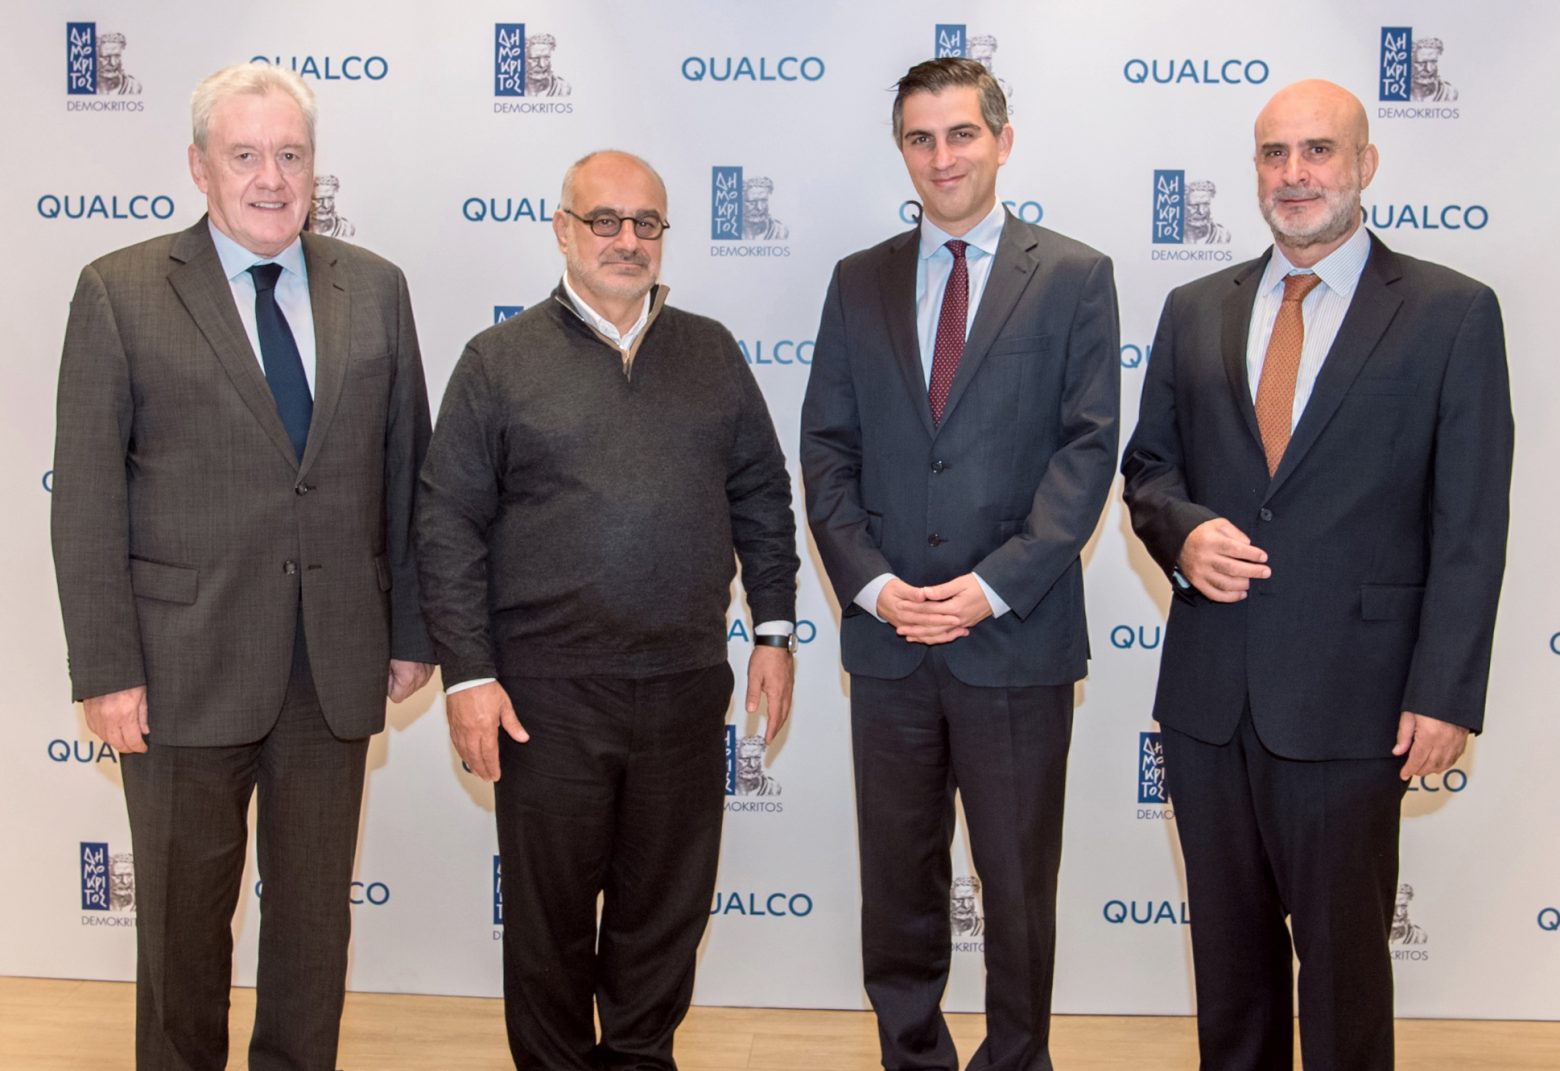 Ψηφιακός μετασχηματισμός - Προχωρά η συνεργασία του Δημόκριτου με την Qualco